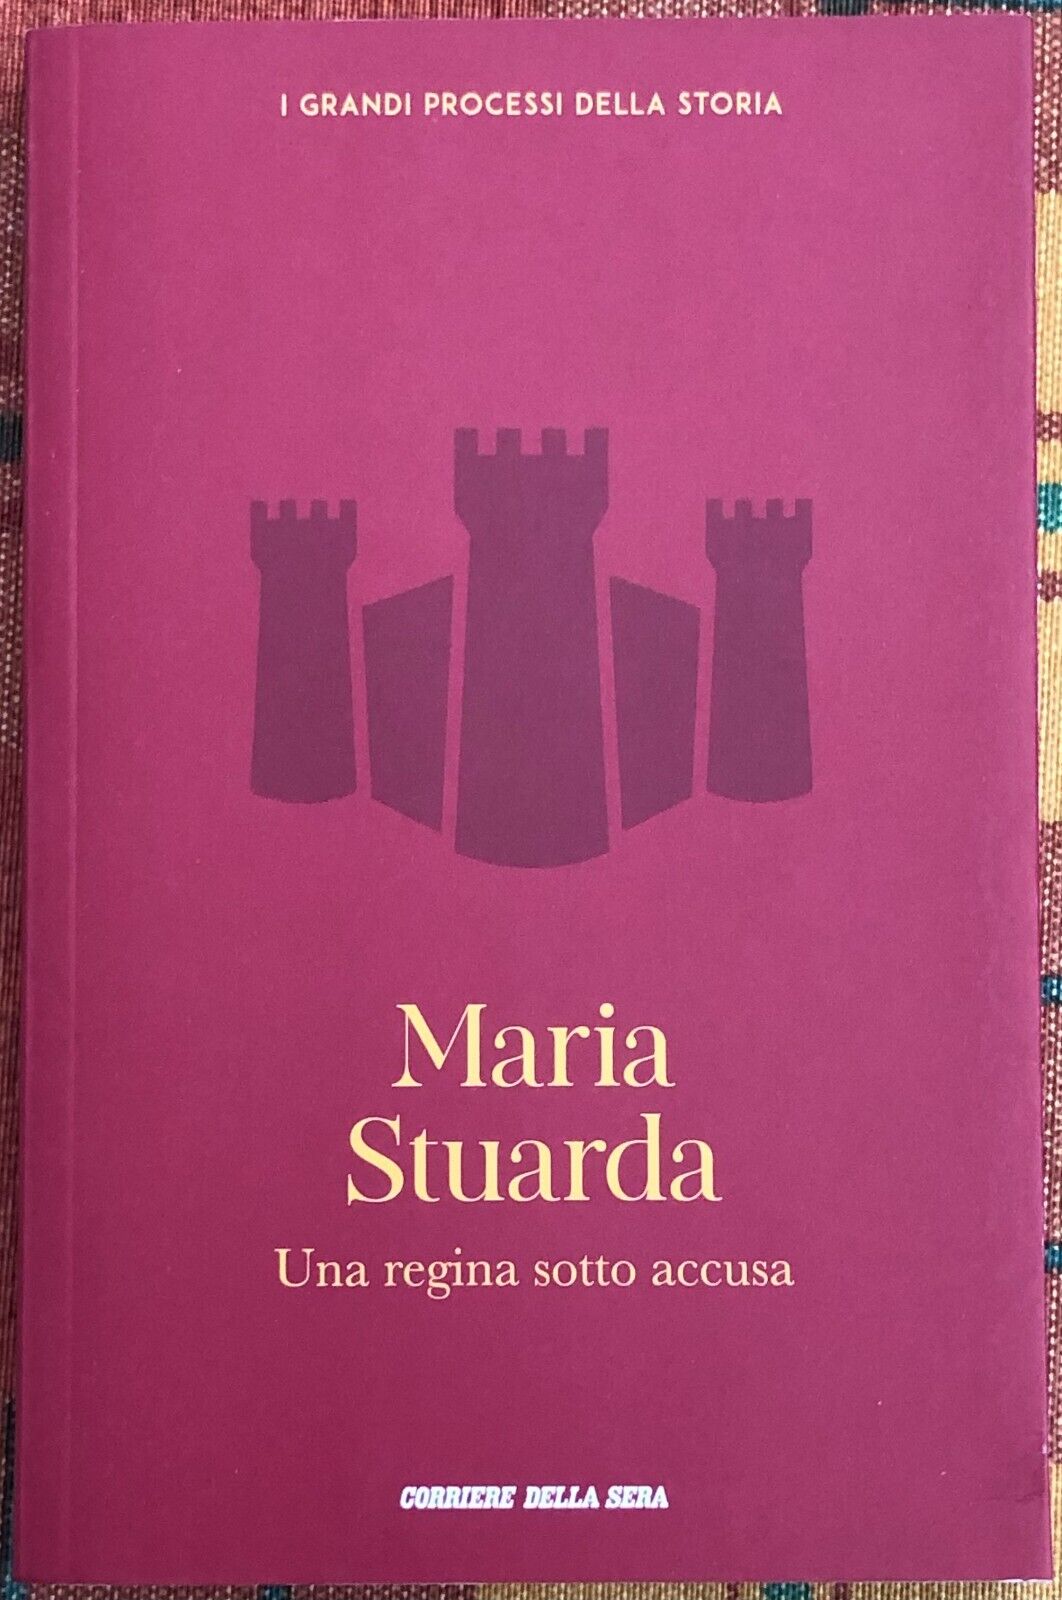  I grandi processi della storia n. 41 - Maria Stuarda. Una regina sotto accusa  